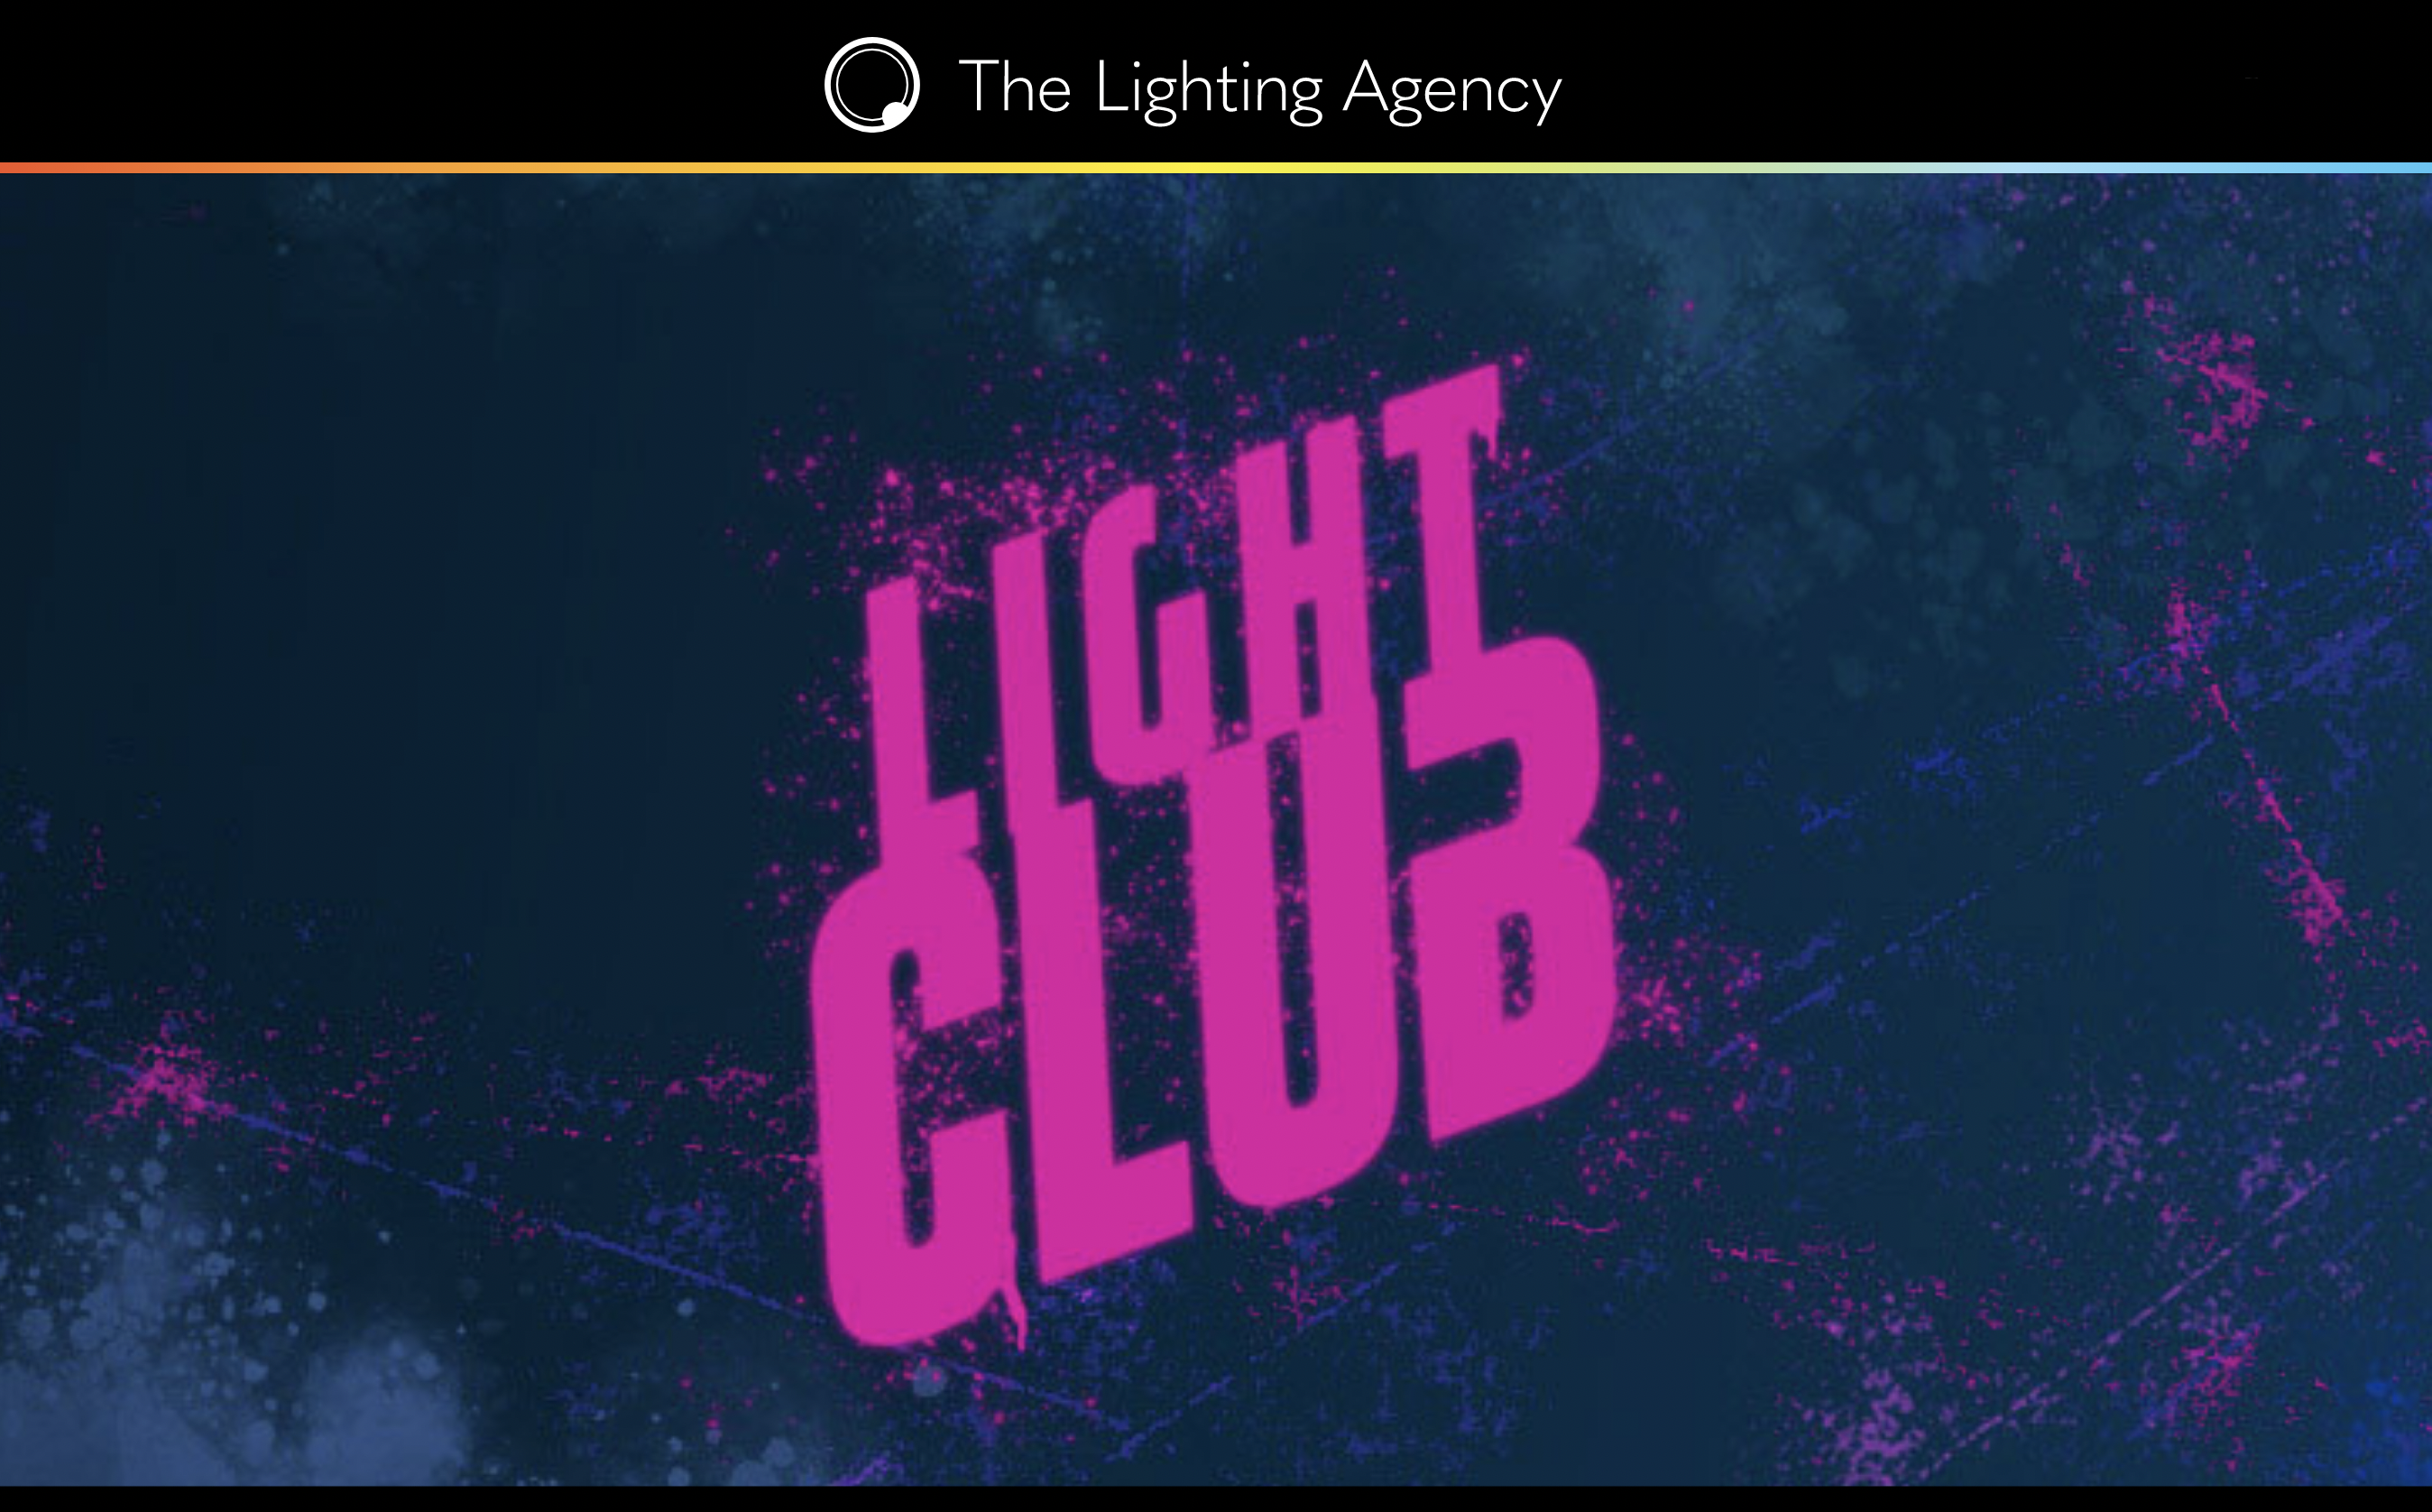 Light Club Event